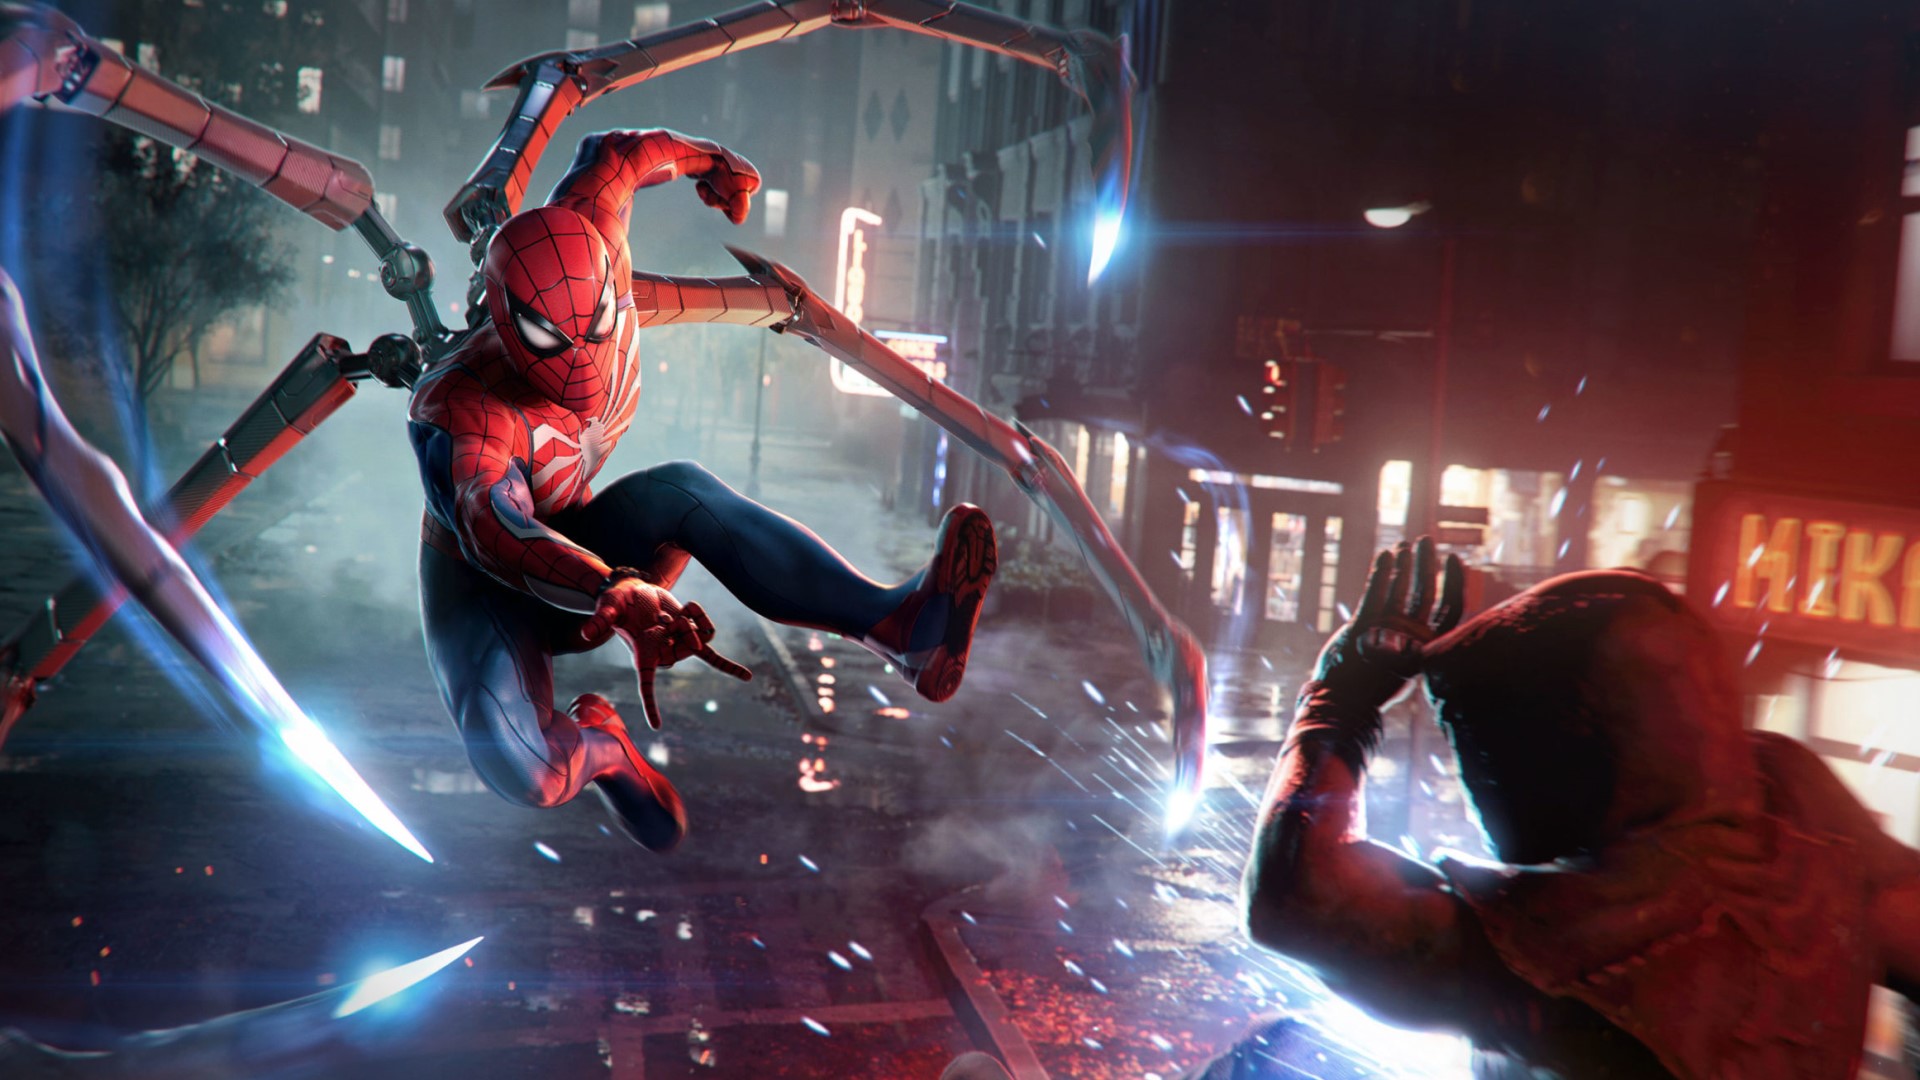 Spider-Man fights a goon